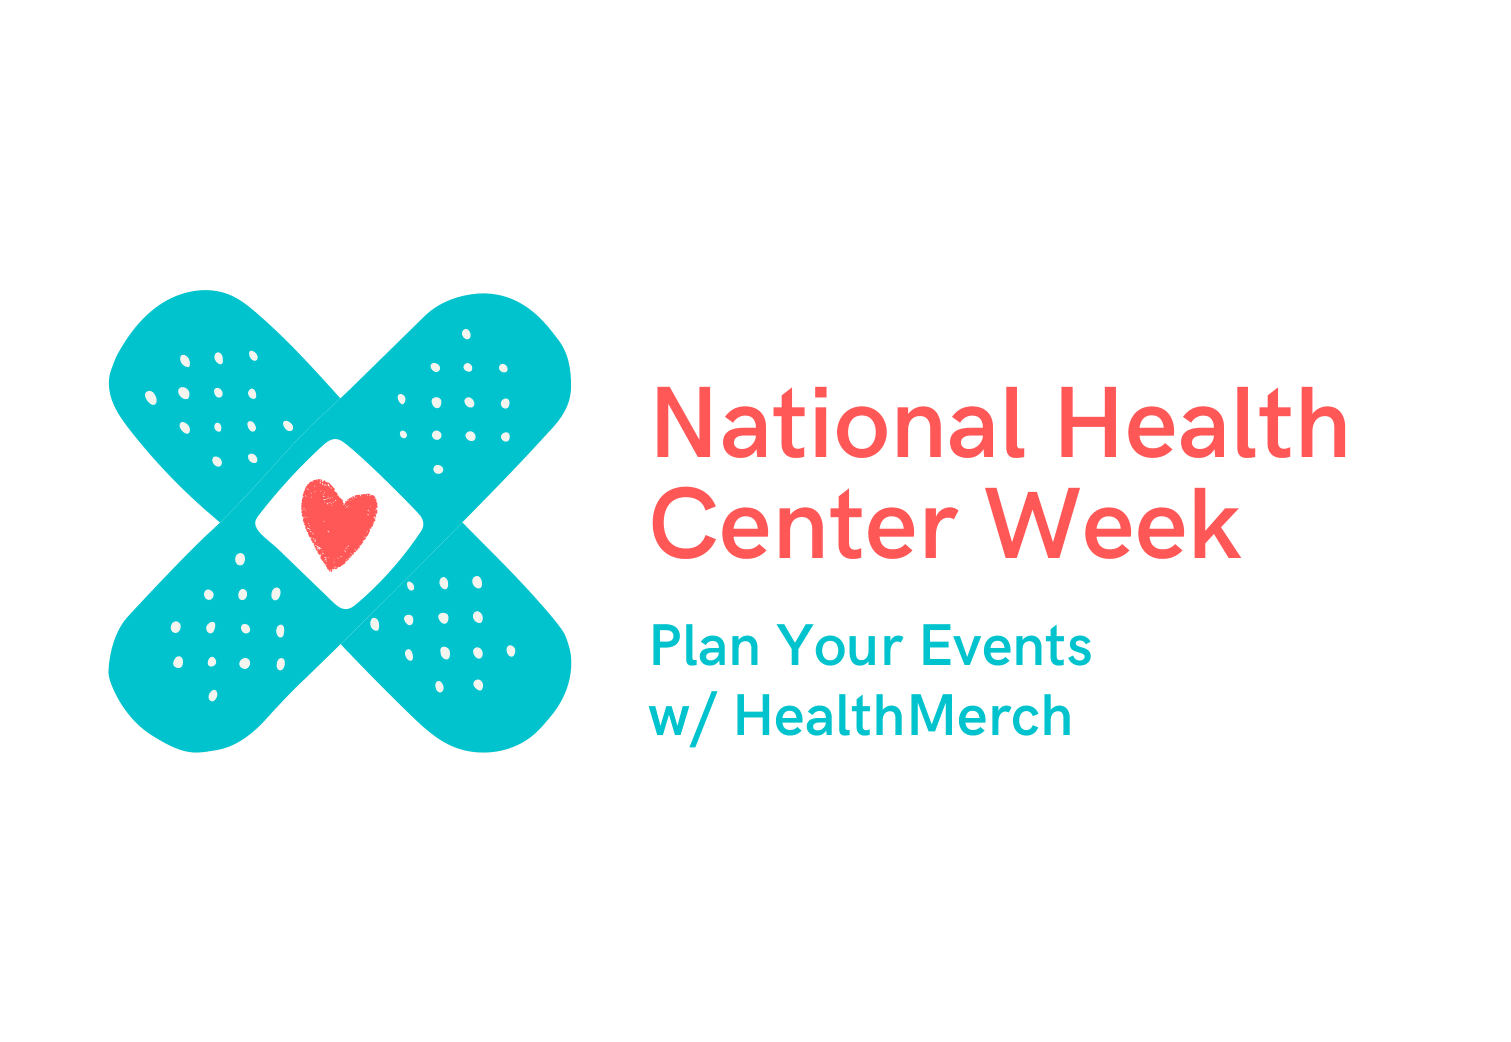 National Health Center Week Events HealthMerch Blog